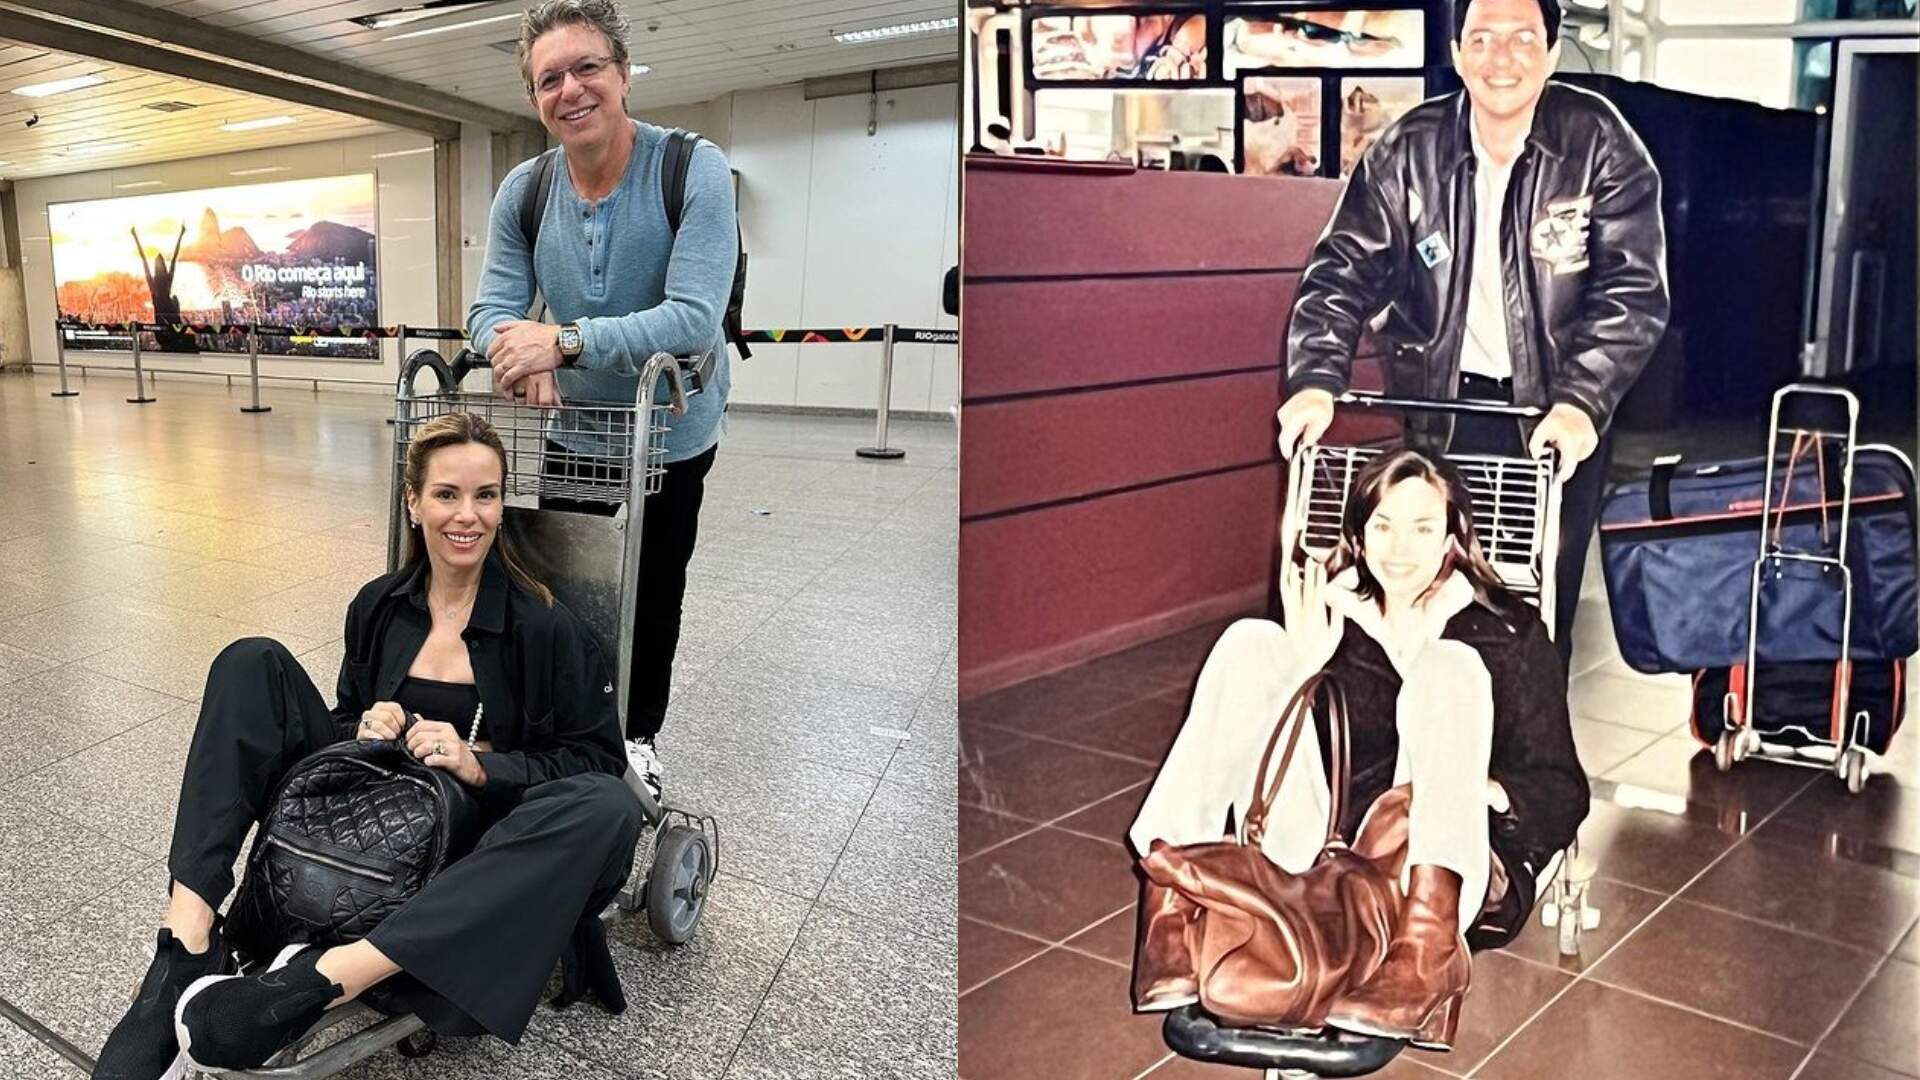 Casalzão! Ana Furtado recria foto para celebrar 24 anos de casada com Boninho - Metropolitana FM